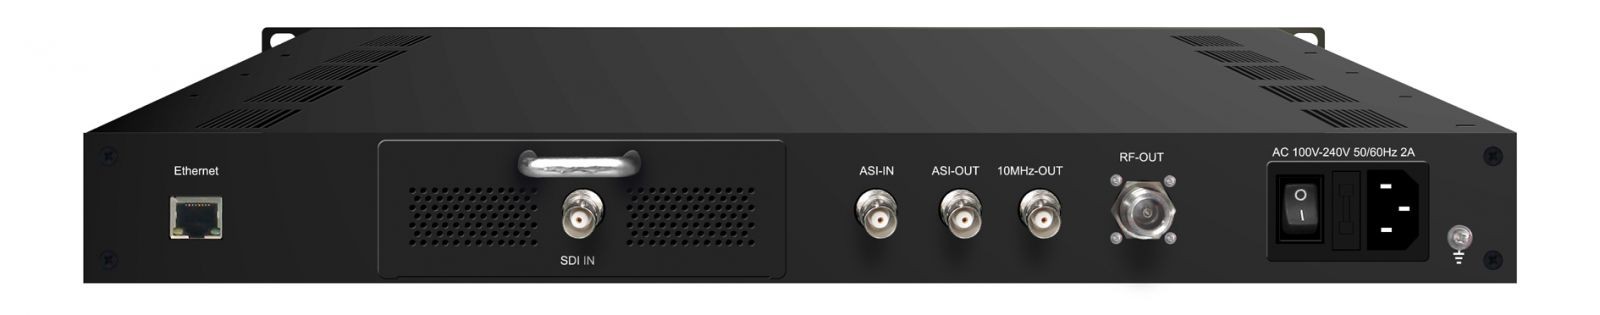 HDMI/CVBS to DVB-S/S2 RF and ASI output modulator